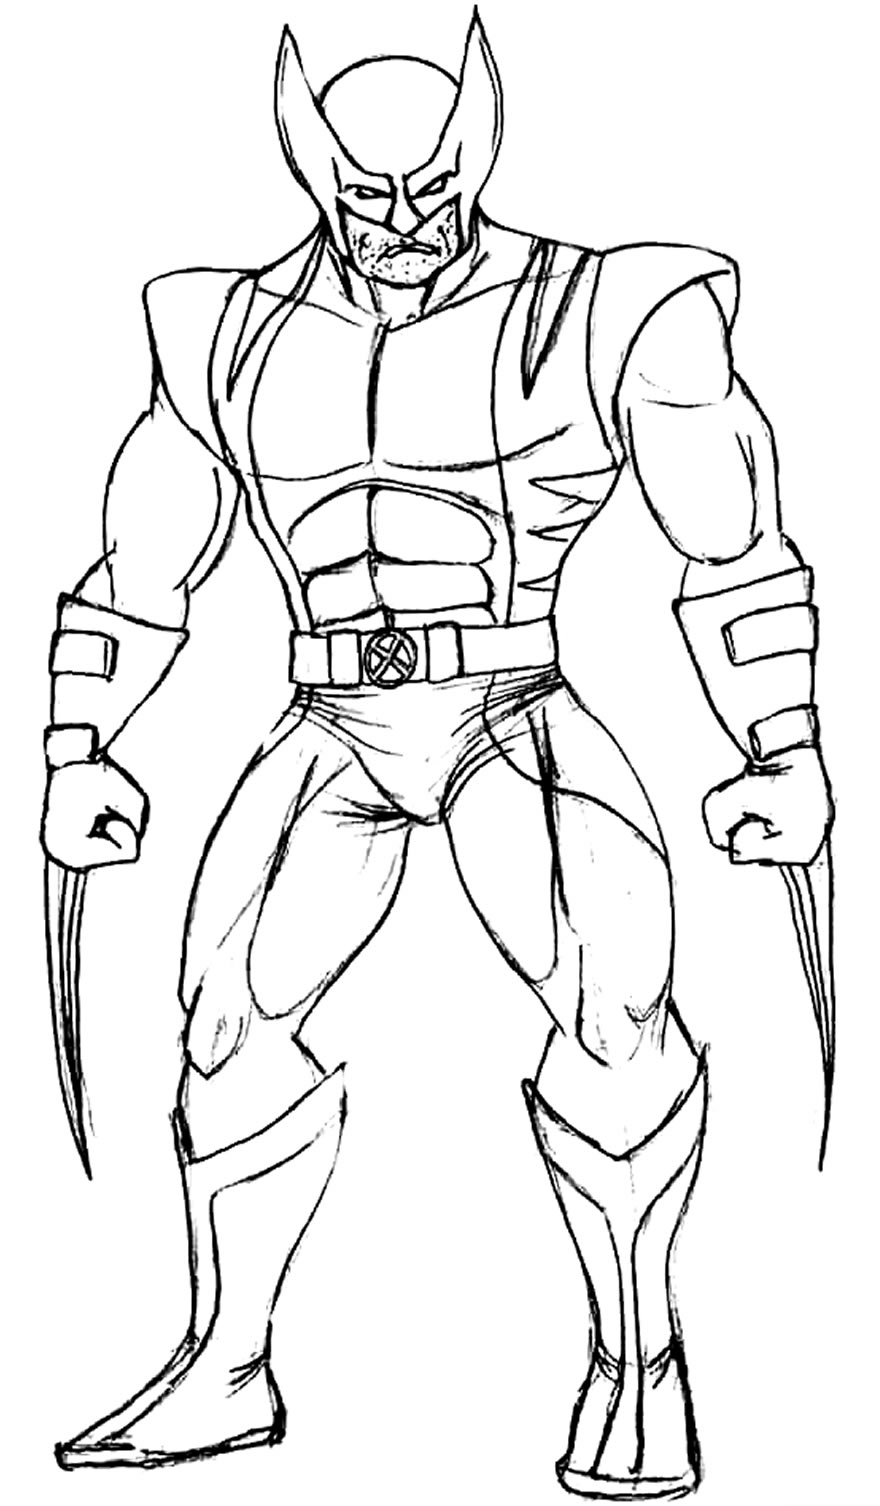 Desenho do Wolverine para colorir